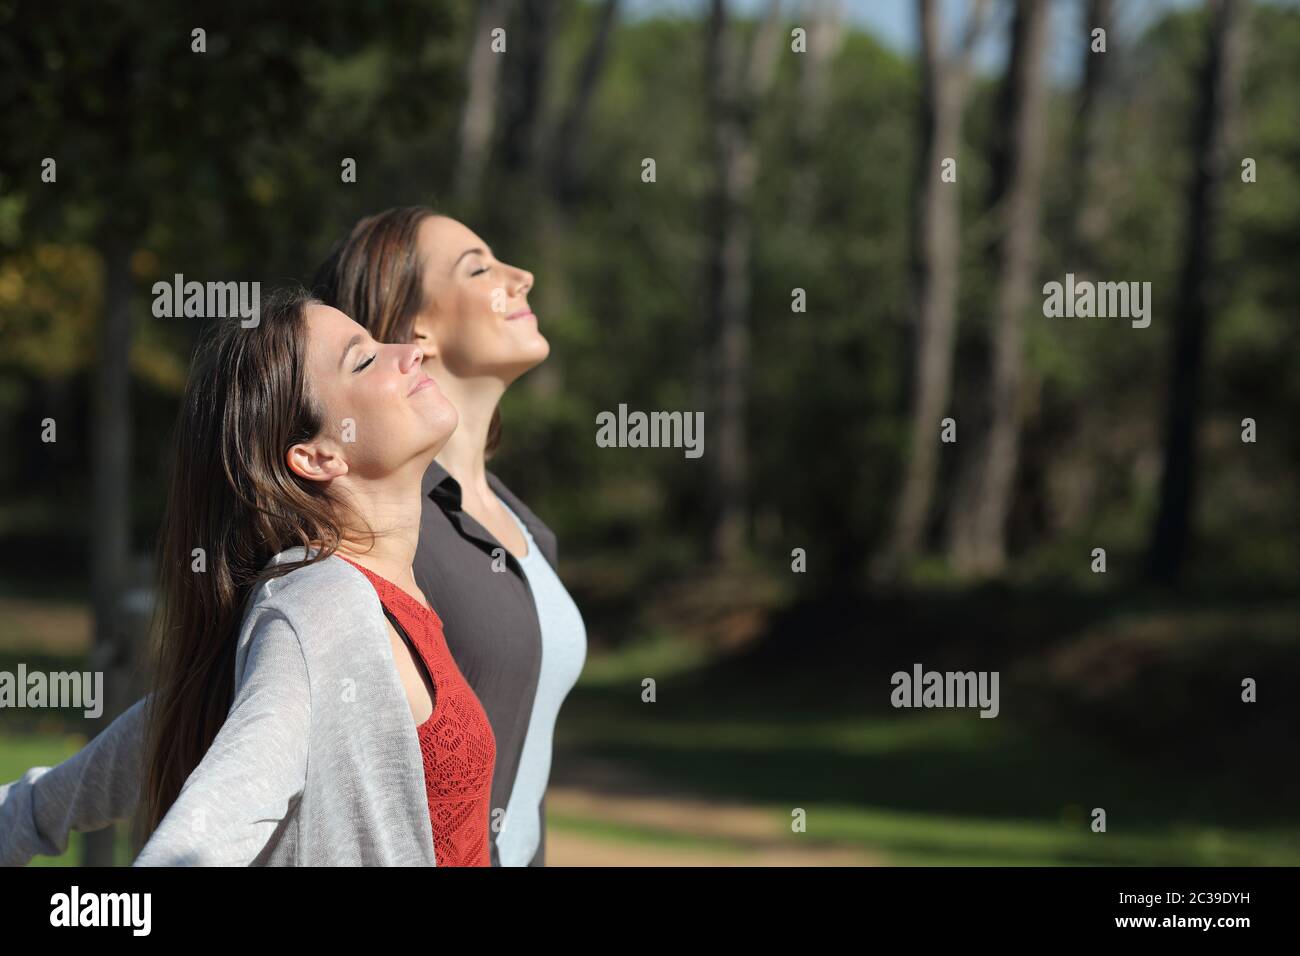 Profil von zwei Frauen entspannt atmen tief die frische Luft stehend in einem Park.jpg Stockfoto